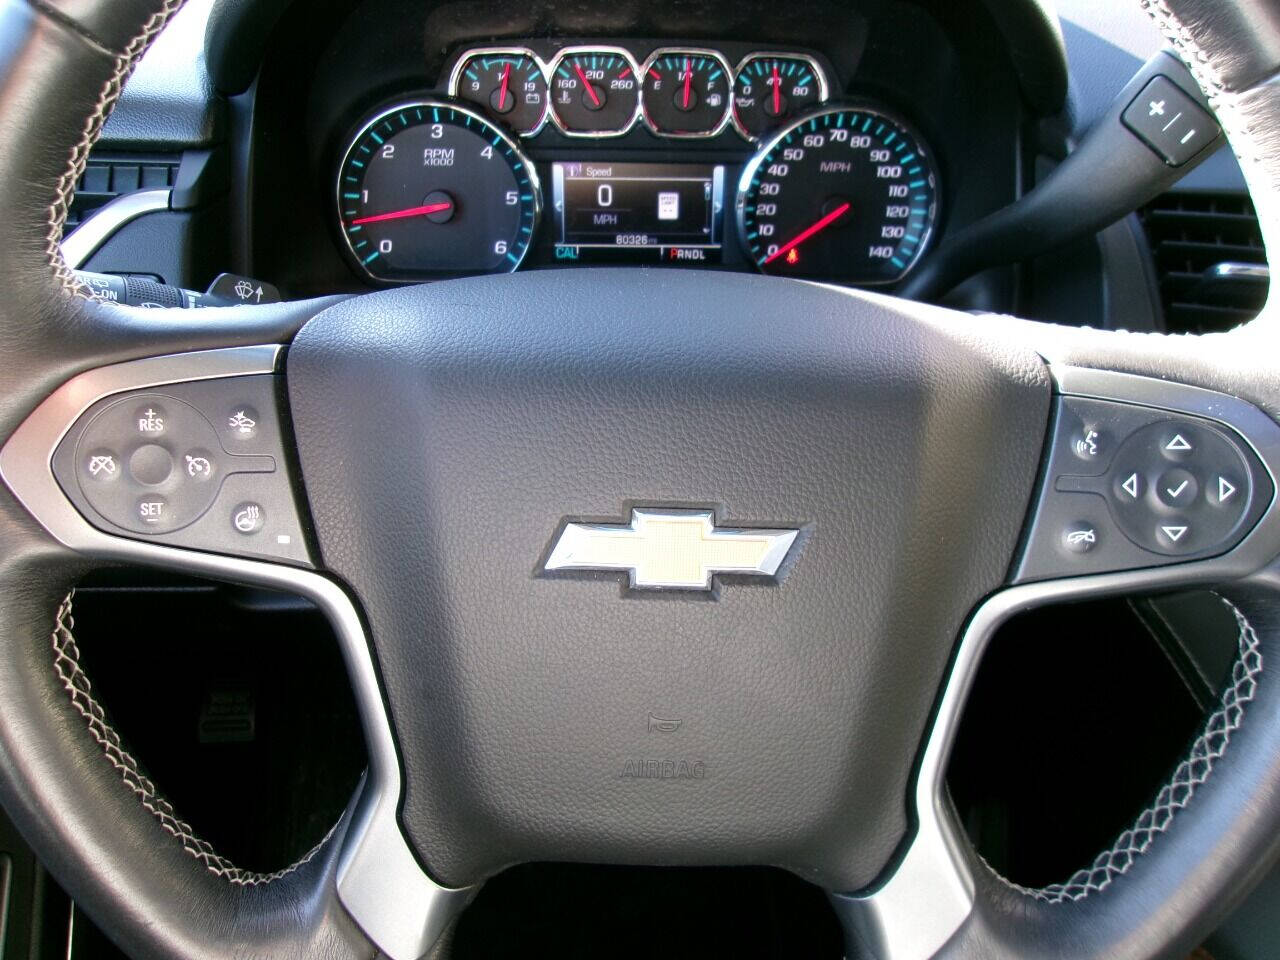 2017 Chevrolet Tahoe